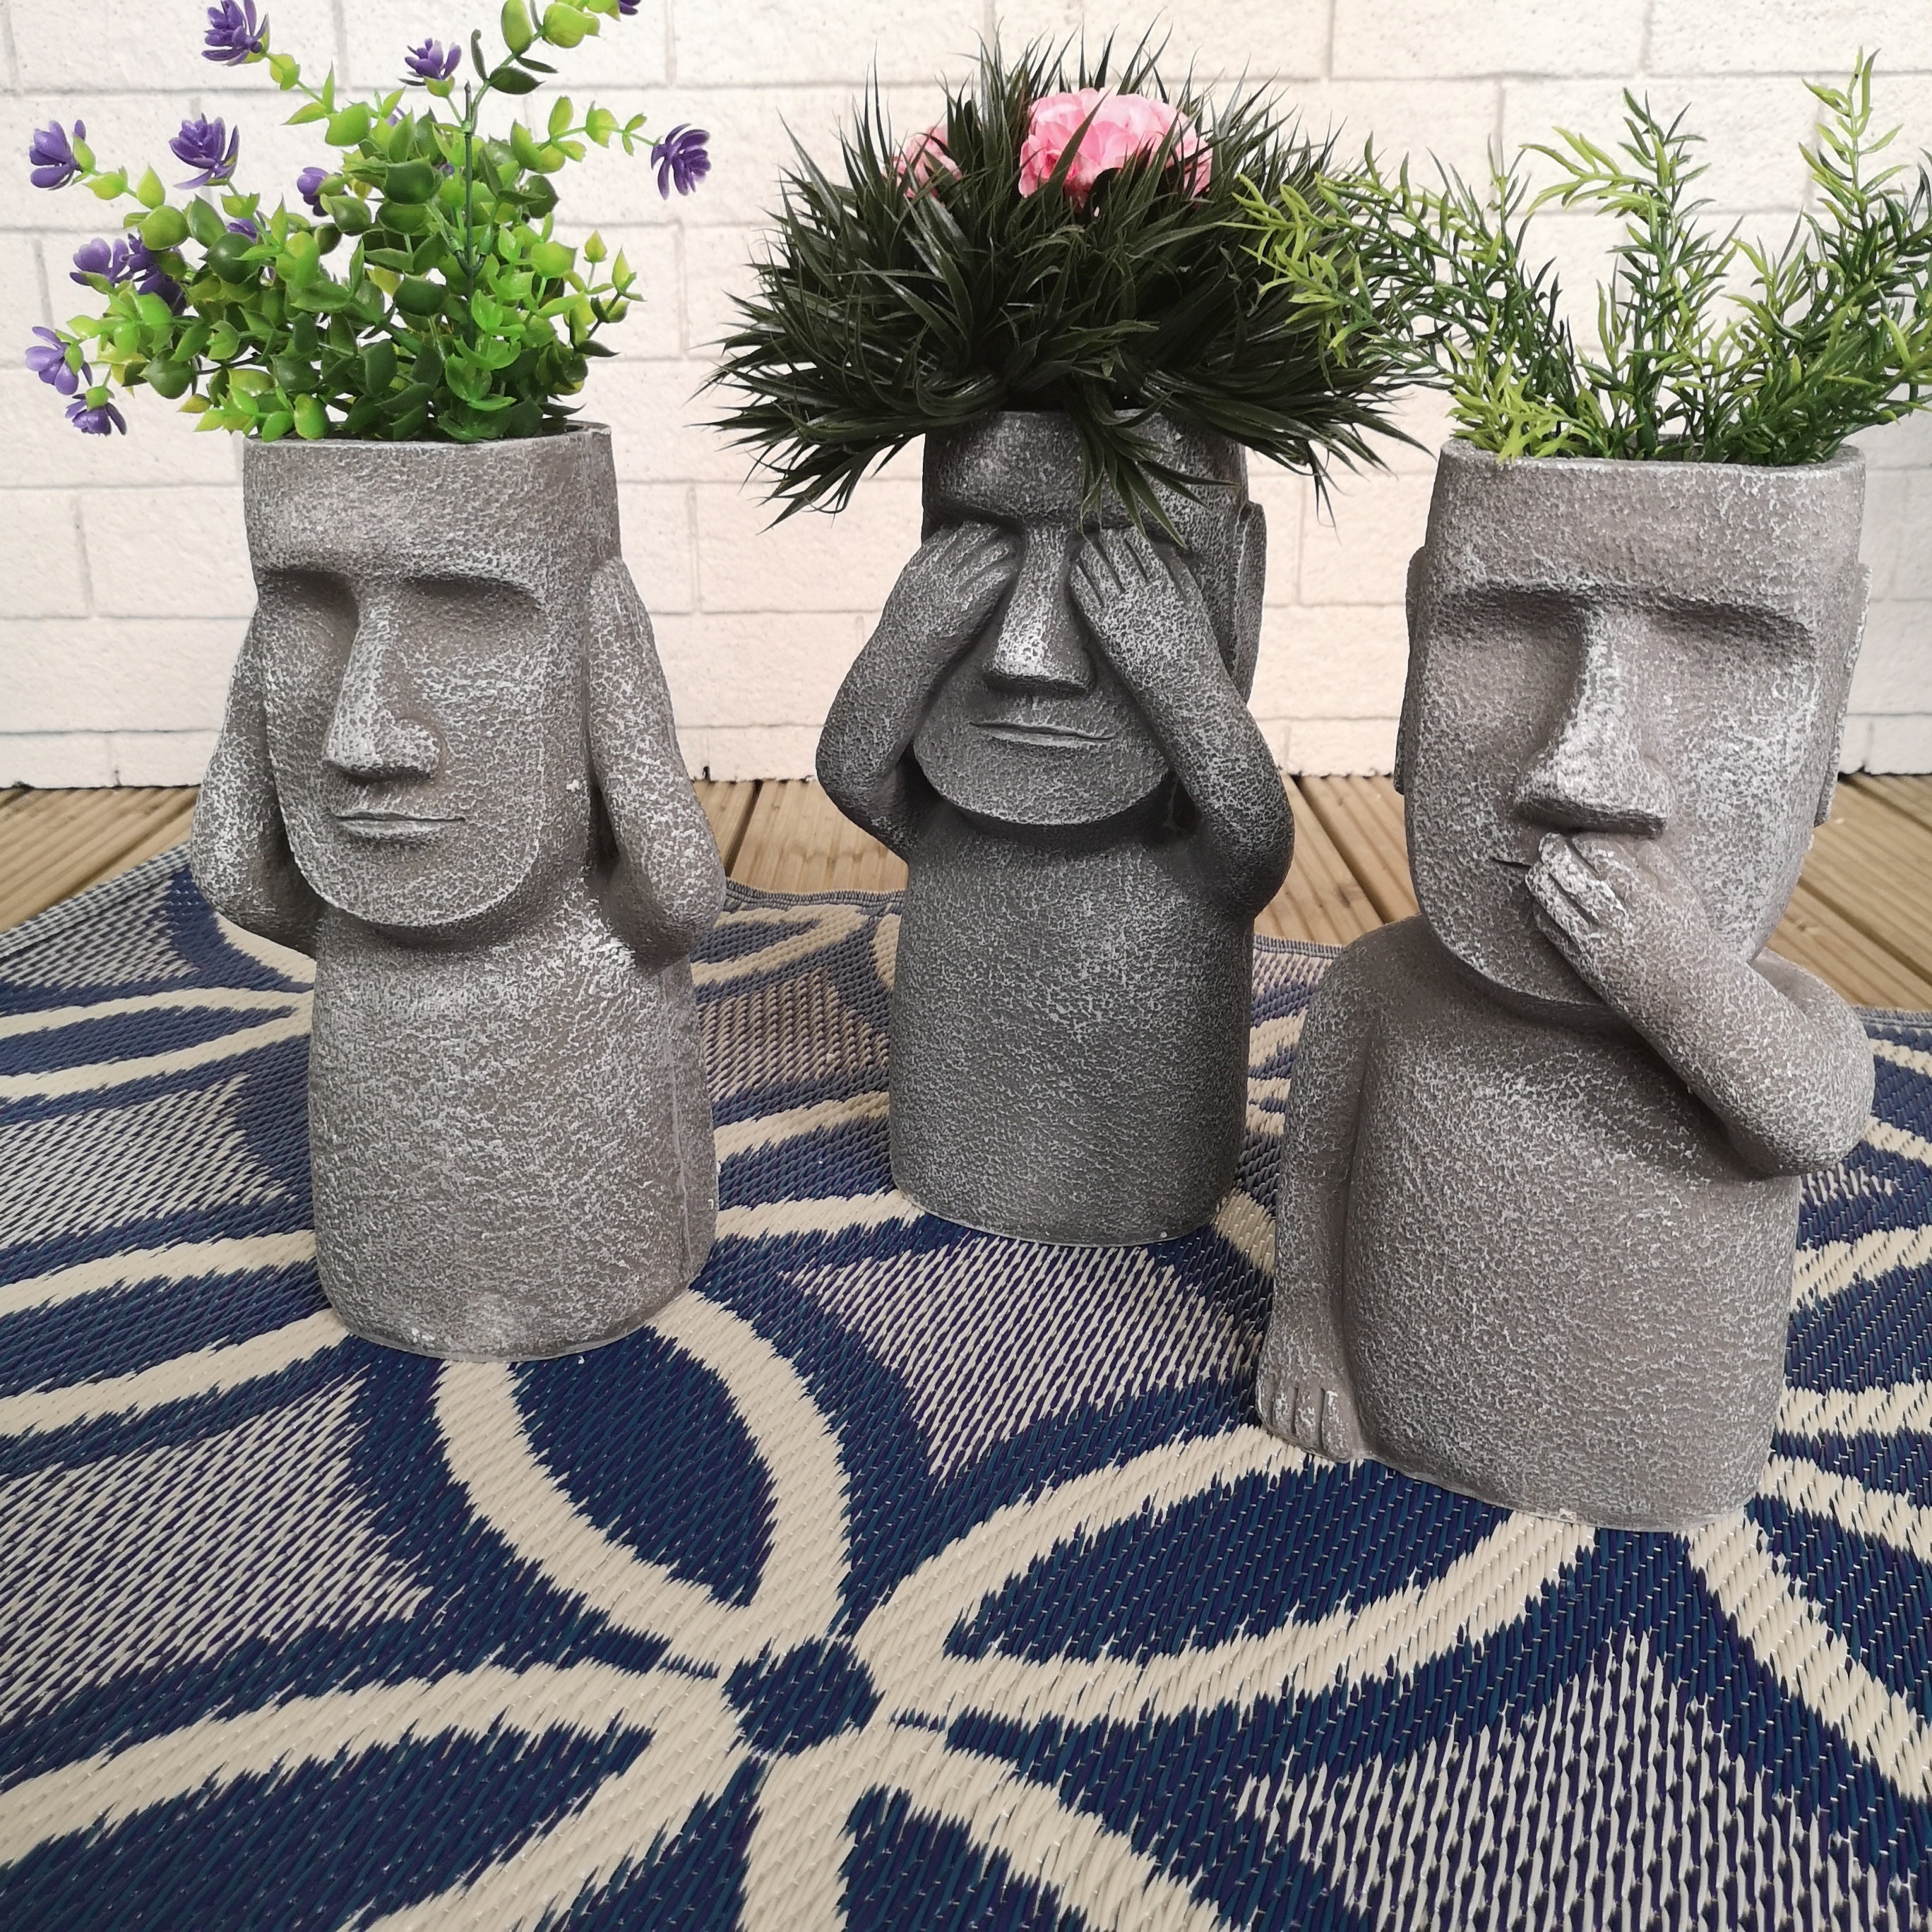 3 x 30cm Easter Island Speak See Hear No Evil Garden Patio Decoration Sculptures Plant Pots